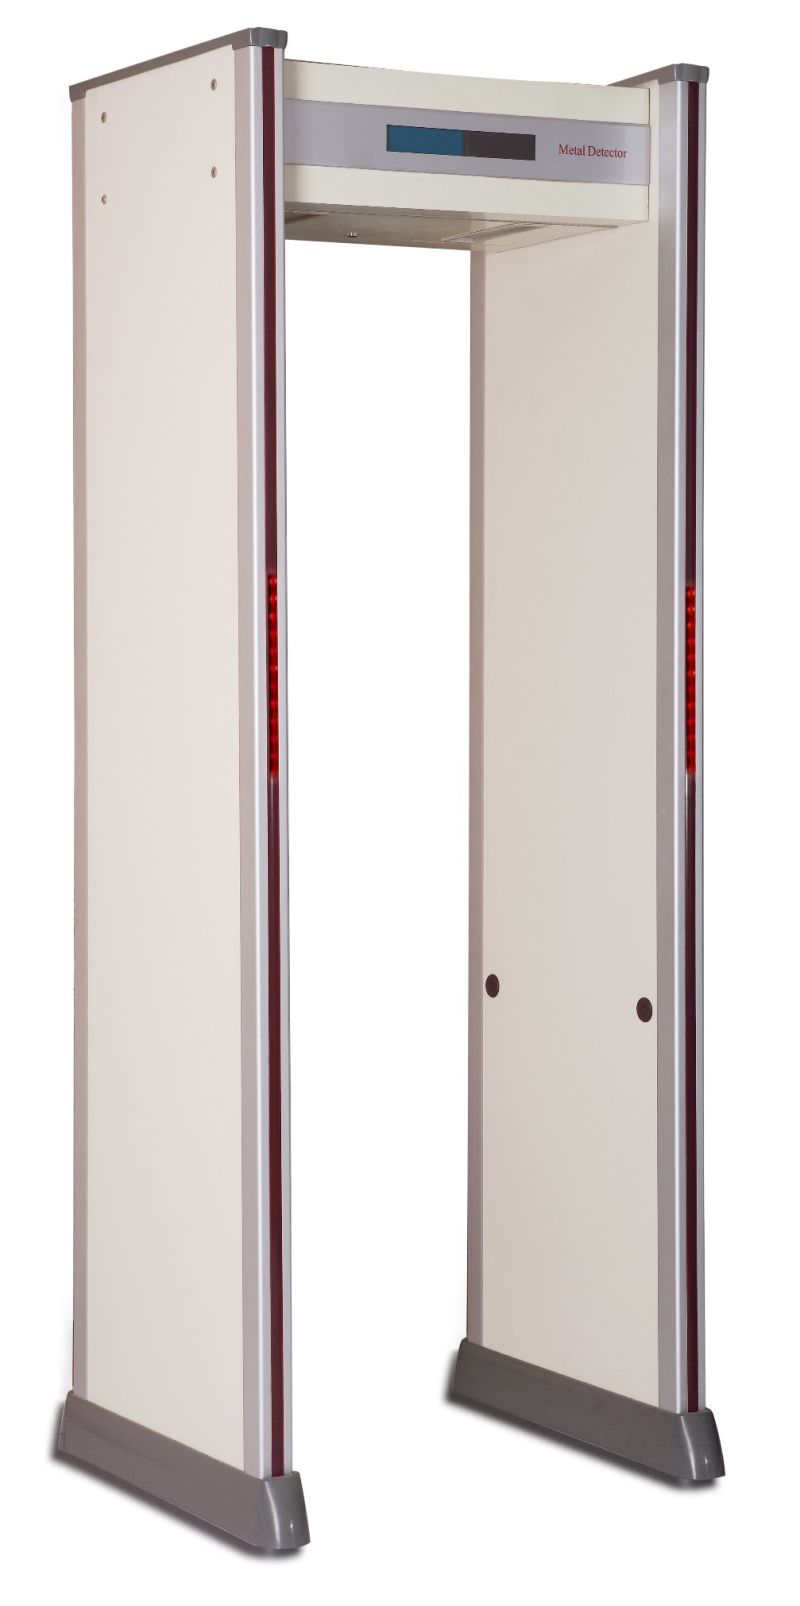 At300b Outdoor Use Metal Detector at-300b Door Frame Metal Detector